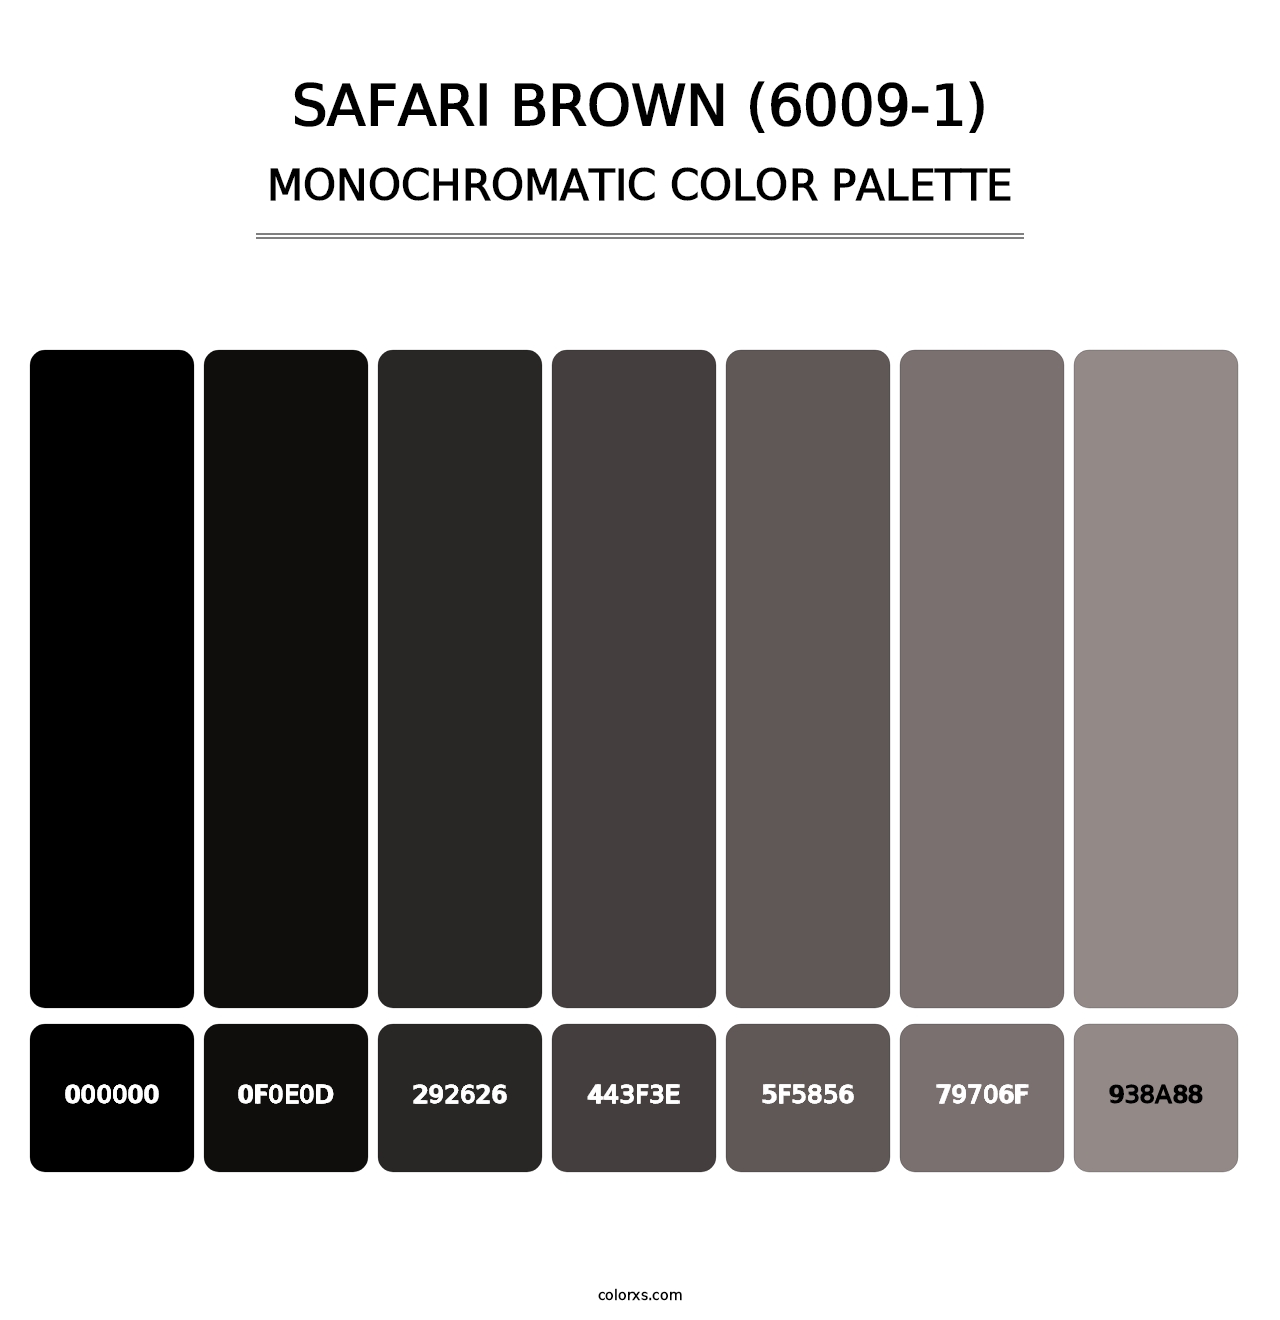 Safari Brown (6009-1) - Monochromatic Color Palette